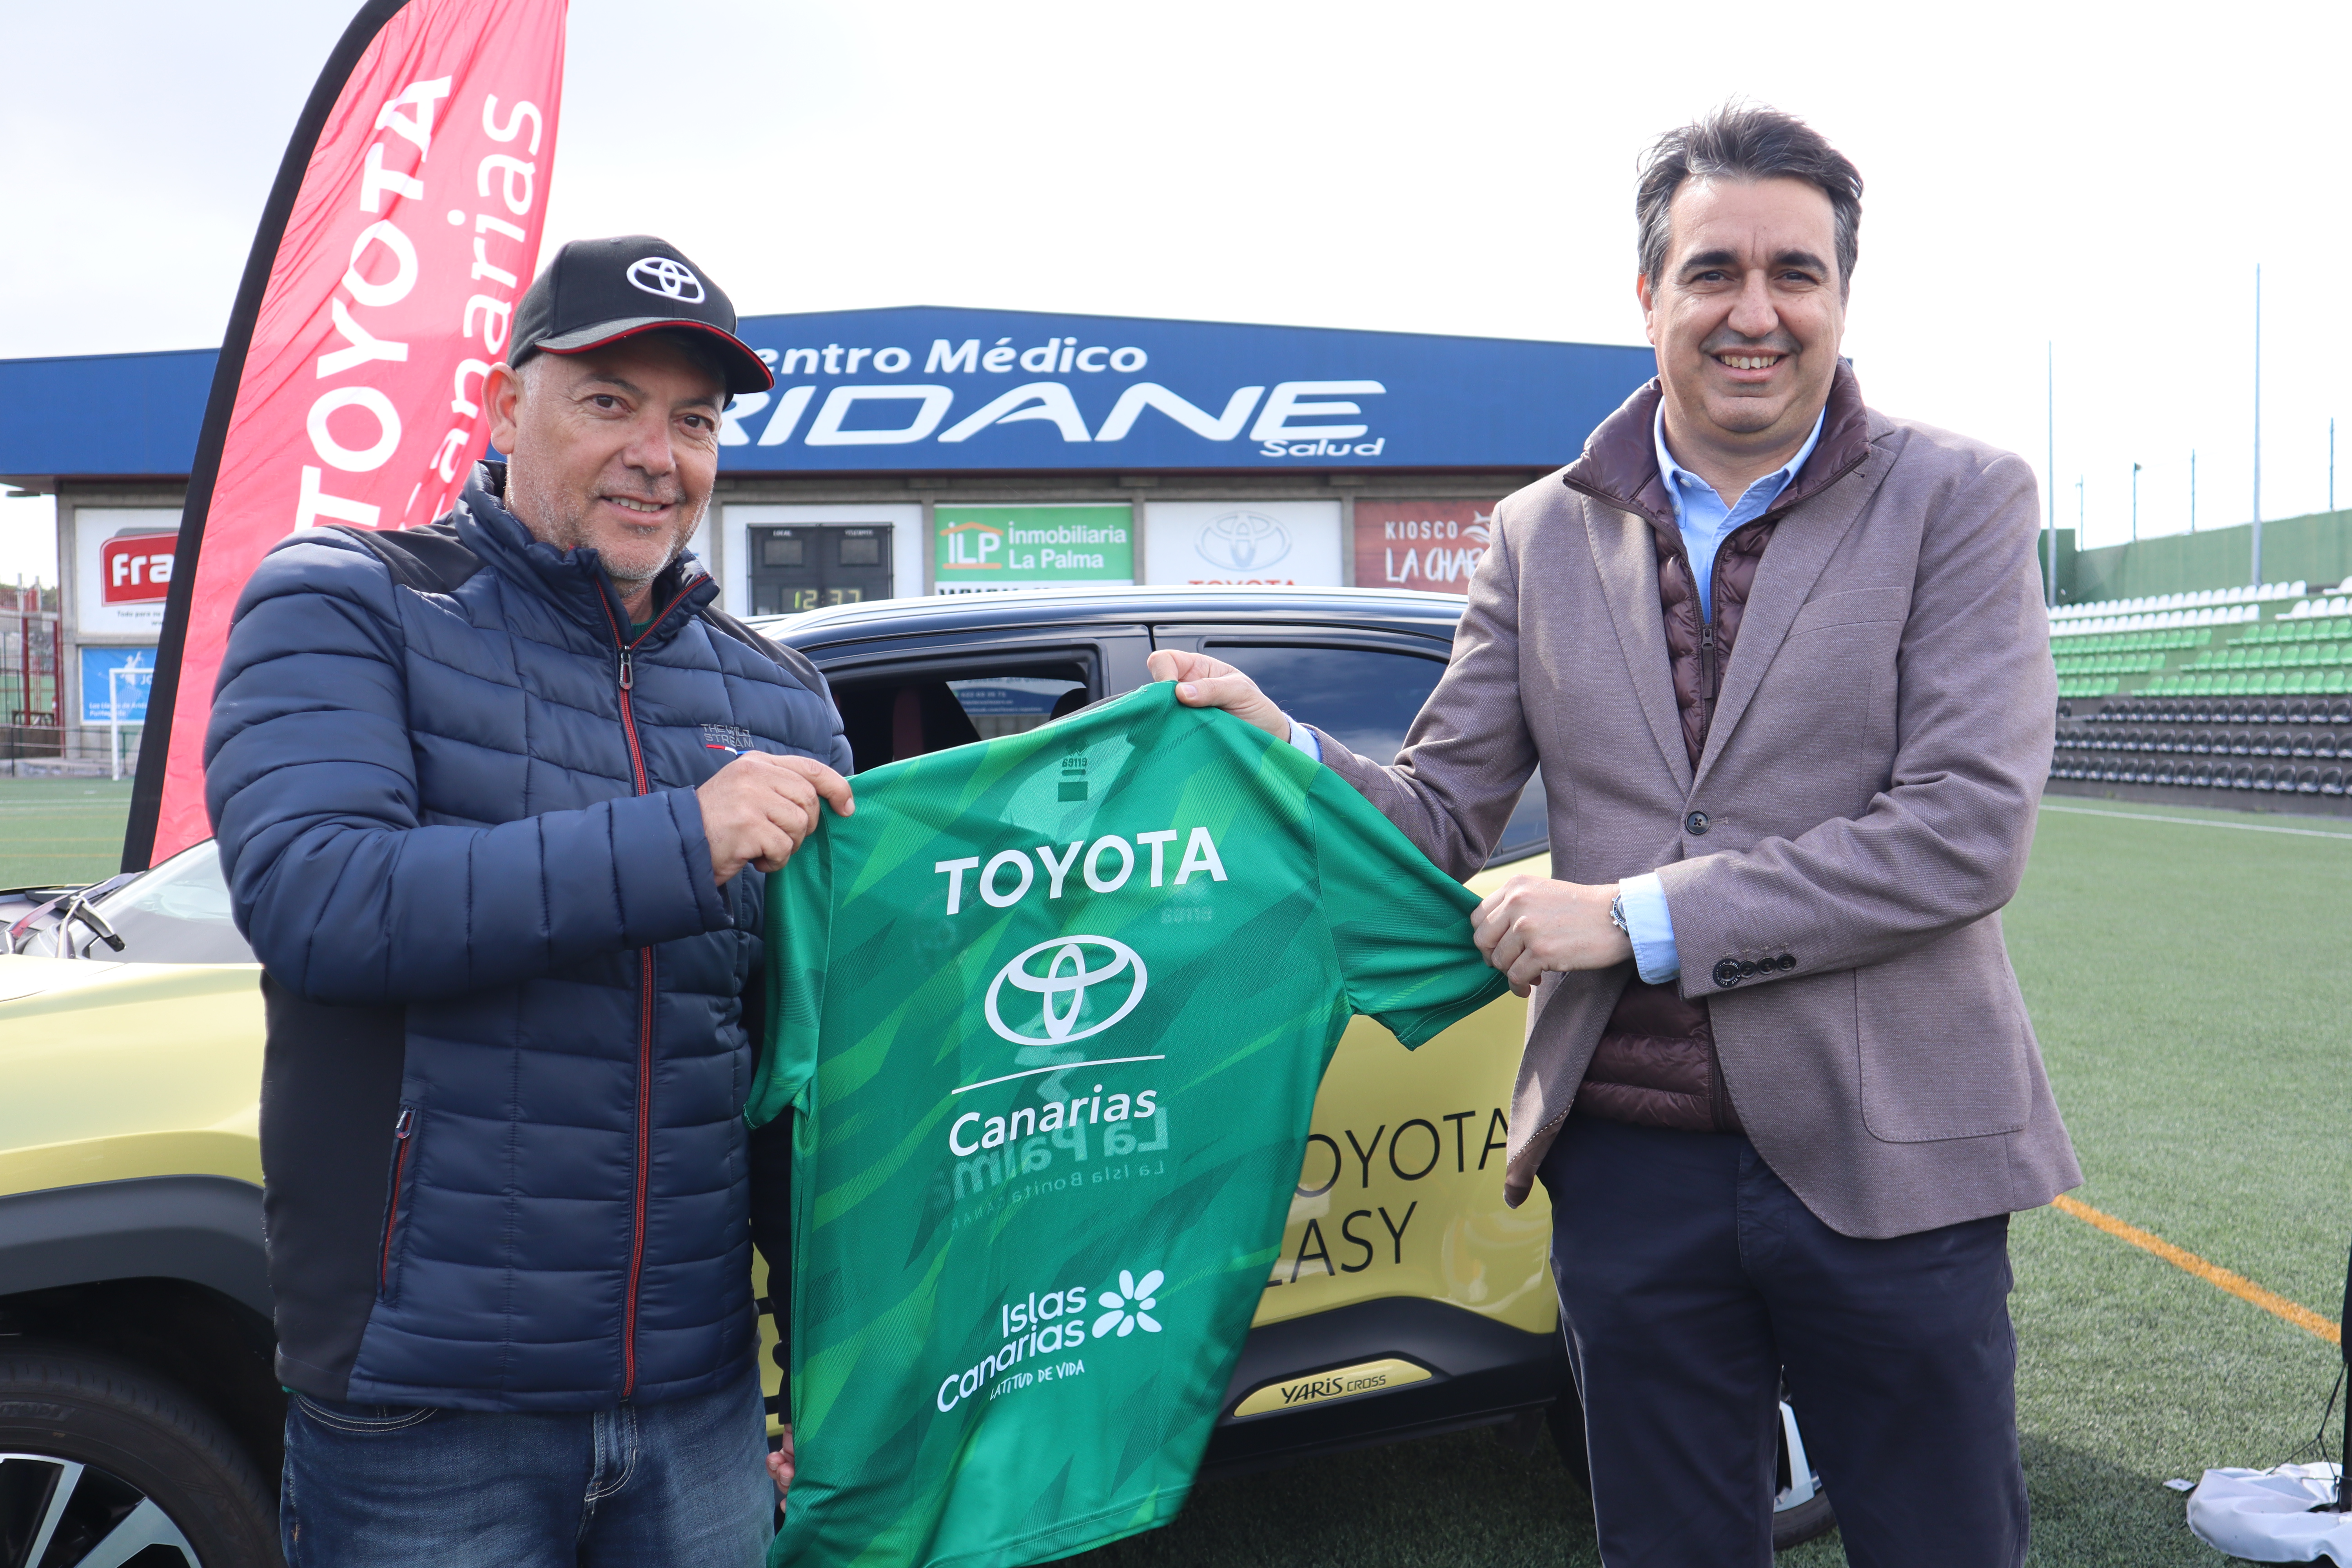 El Club Deportivo Atlético Paso y Toyota Canarias aúnan fuerzas en su compromiso social y deportivo